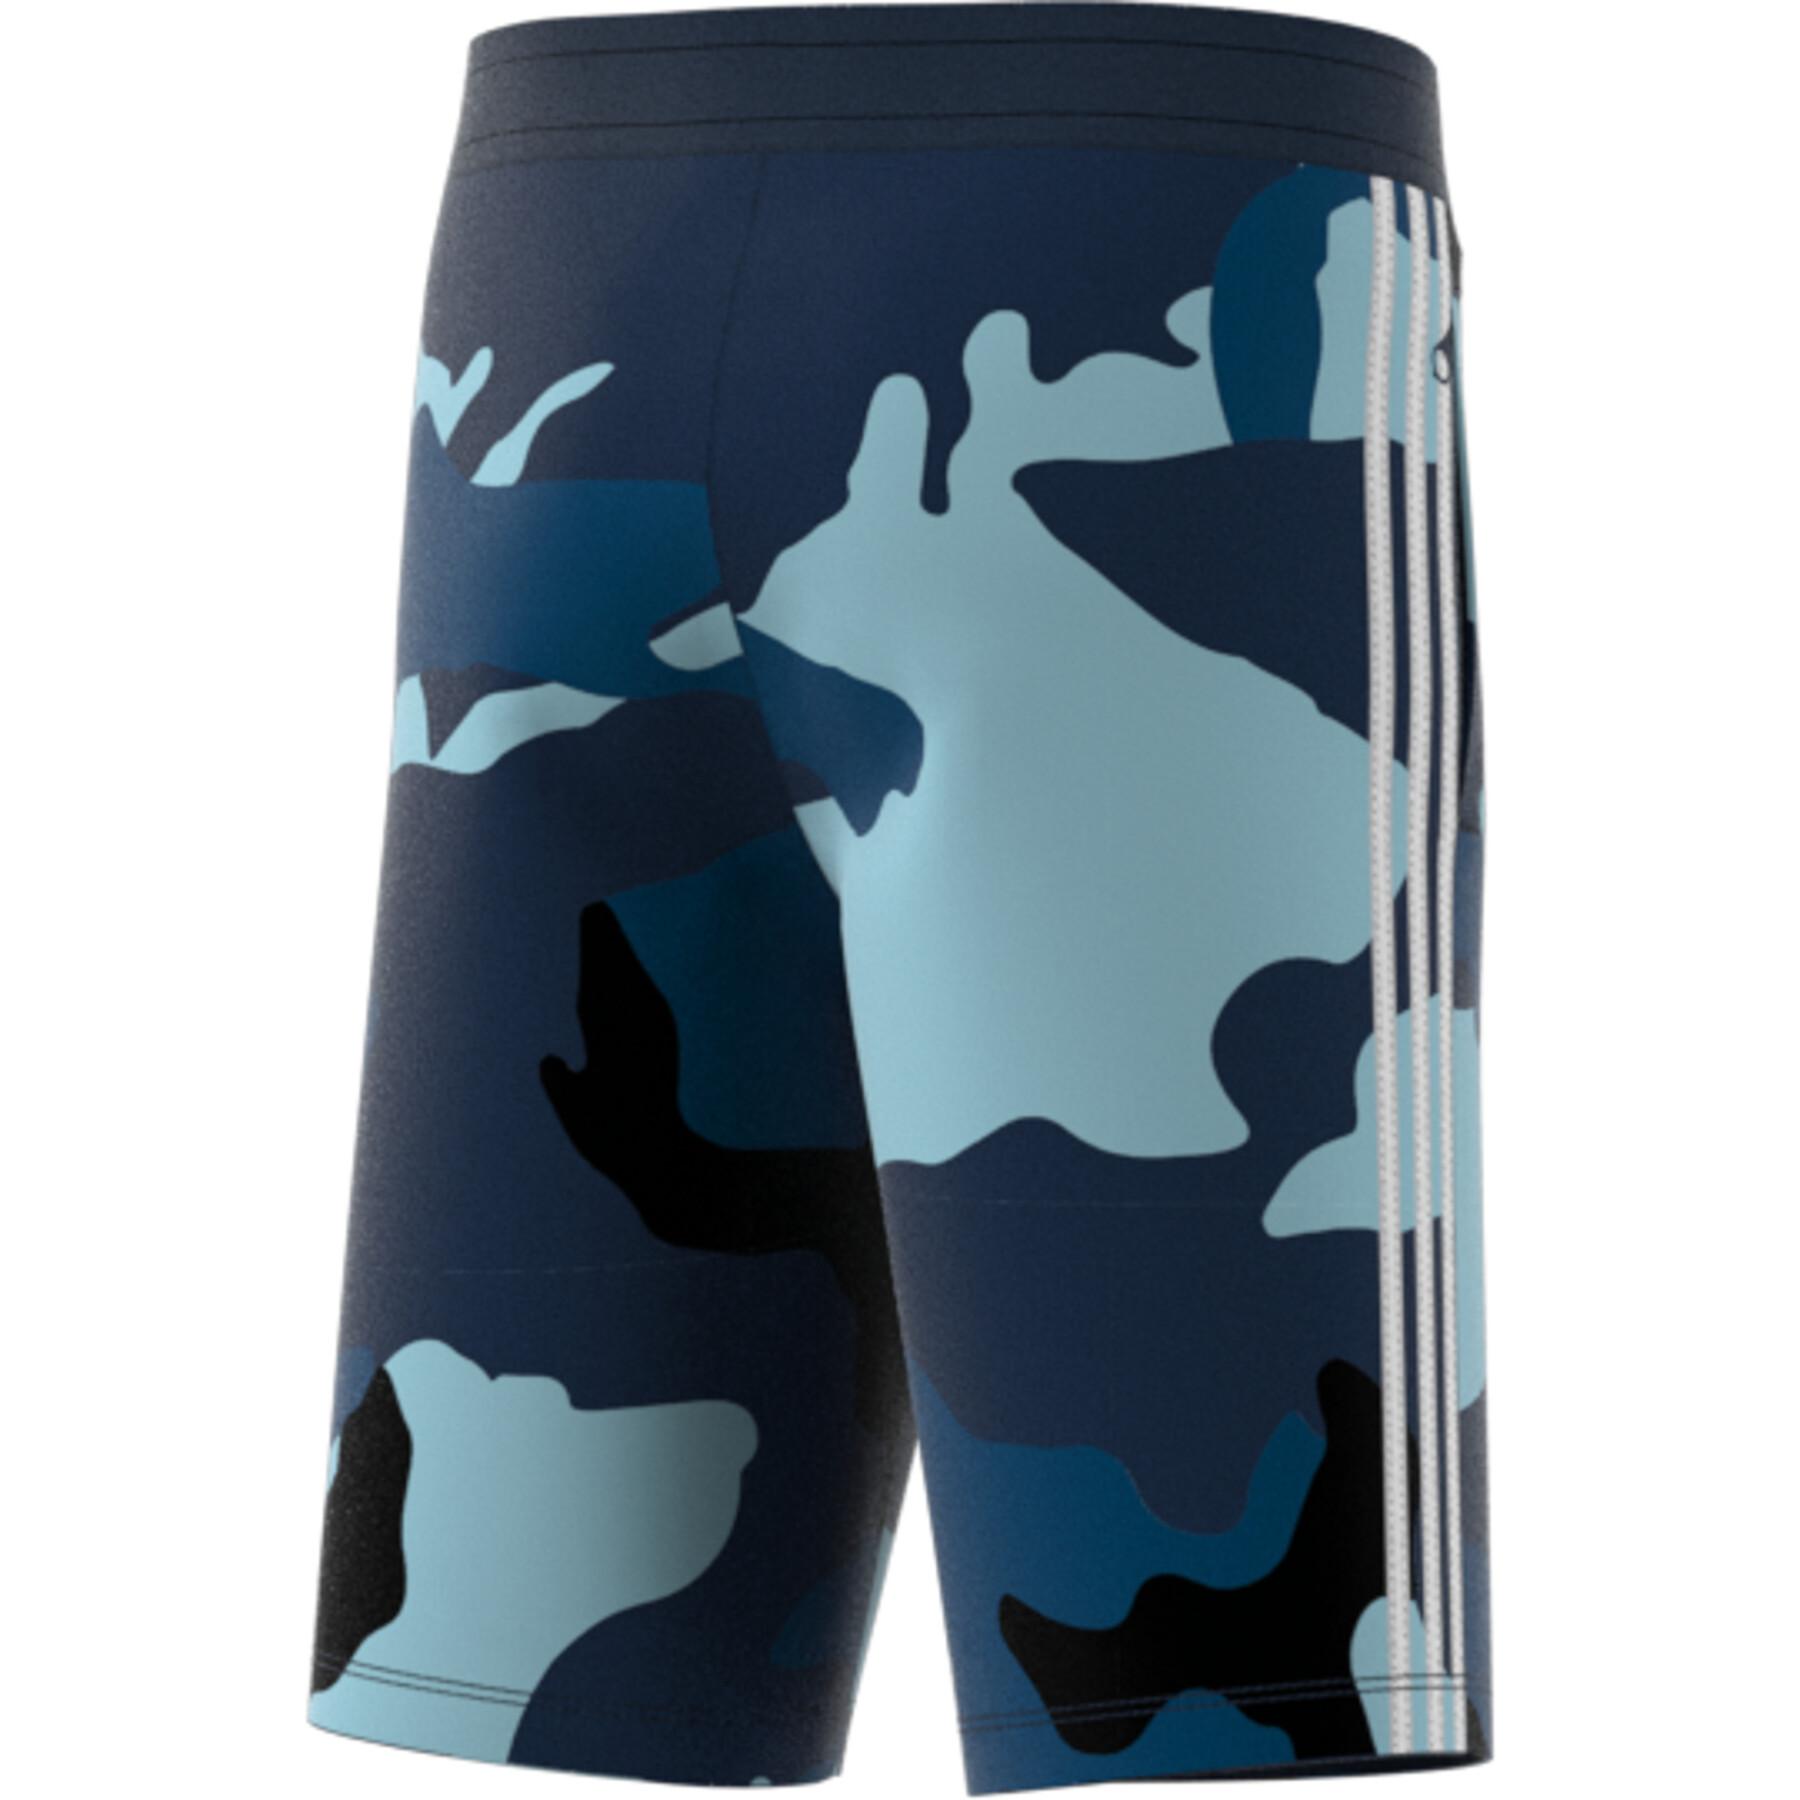 Children's shorts adidas Camouflage